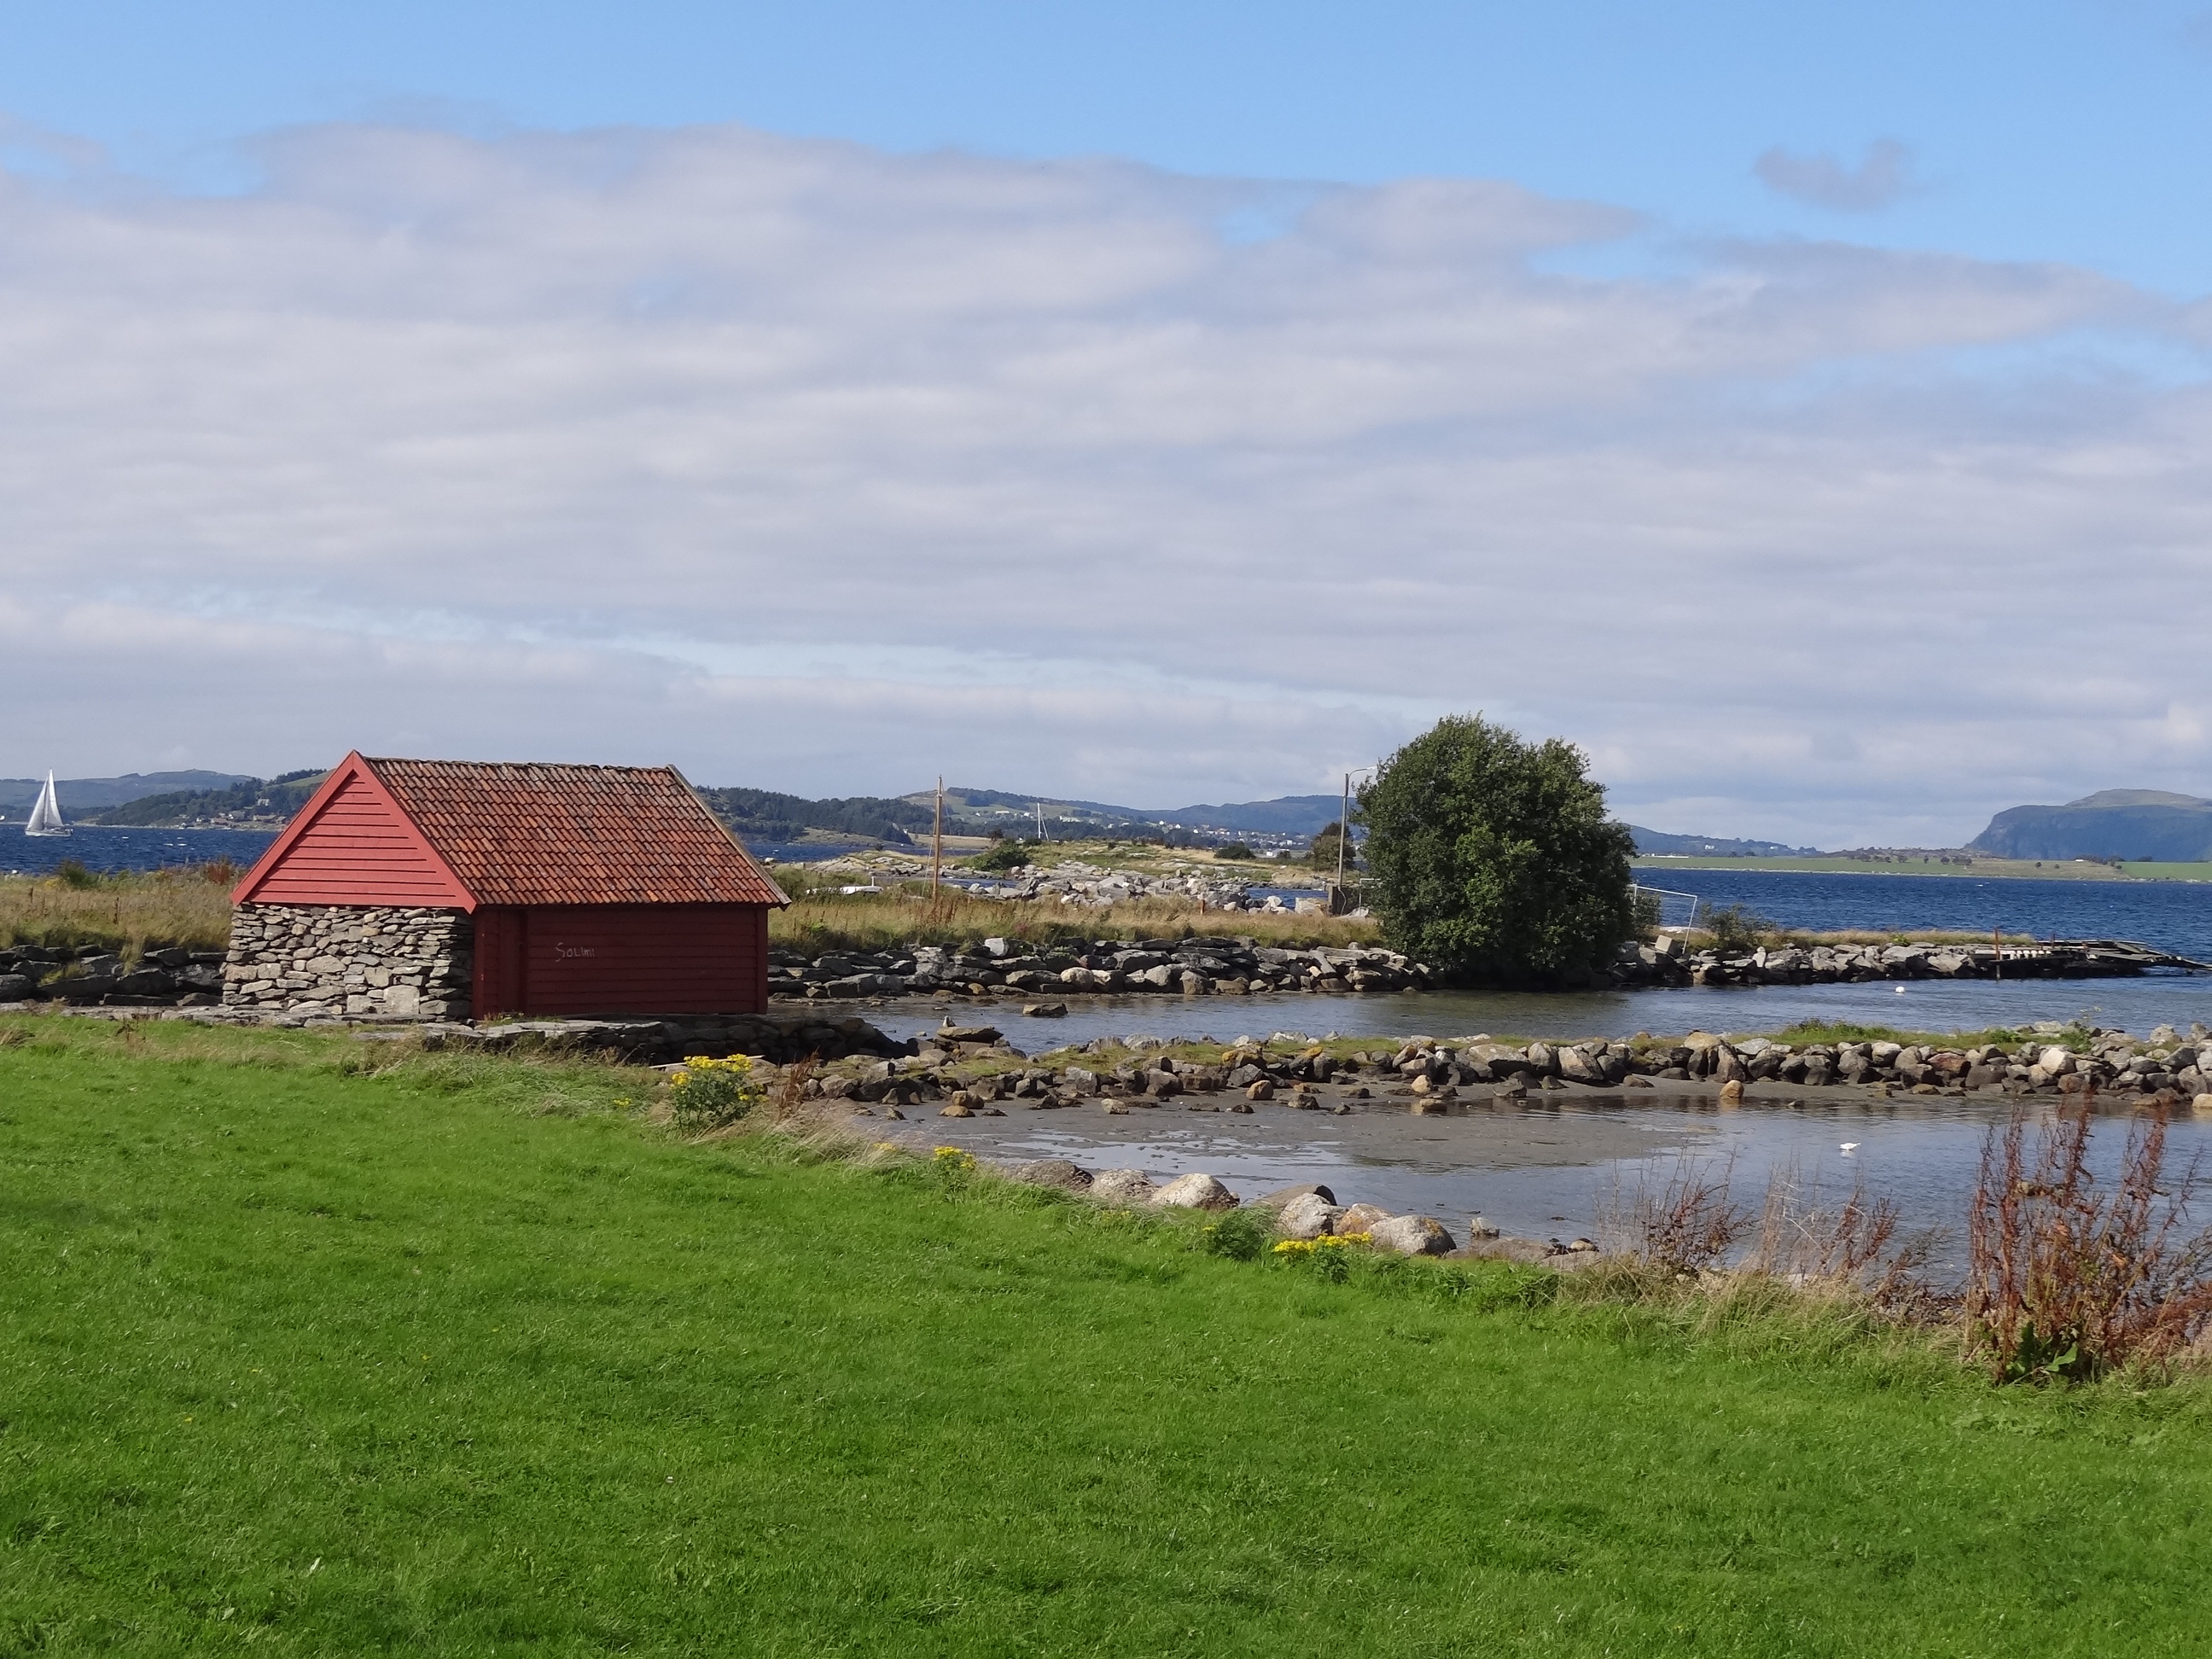 mieszkanie na wyspie atrakcje norwegia